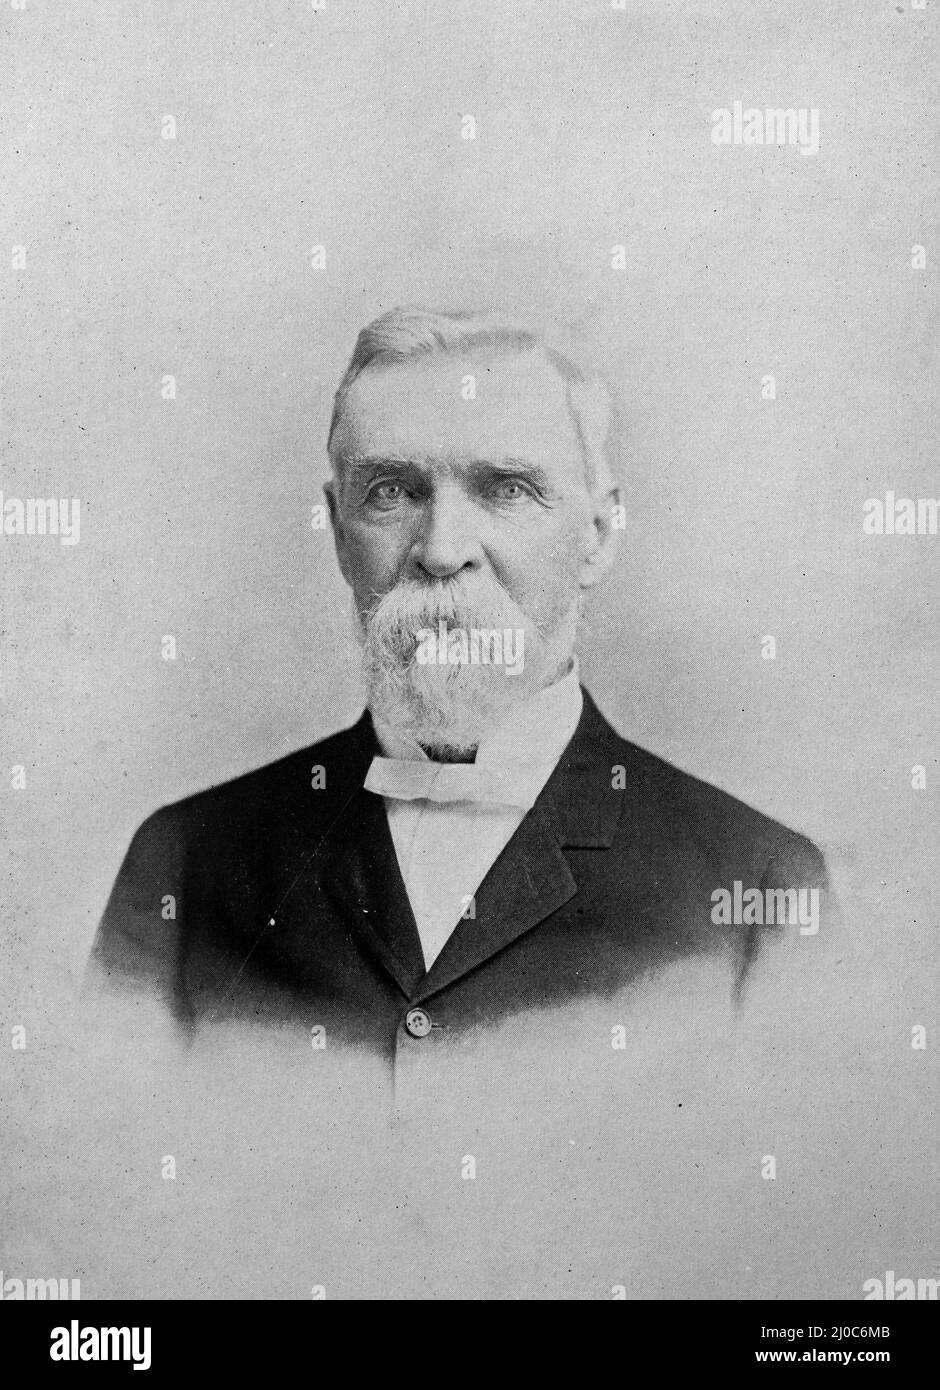 John Fritz, pionnier américain de la technologie du fer et de l'acier et père de l'industrie américaine de l'acier; photographie en noir et blanc prise vers 1890s Banque D'Images